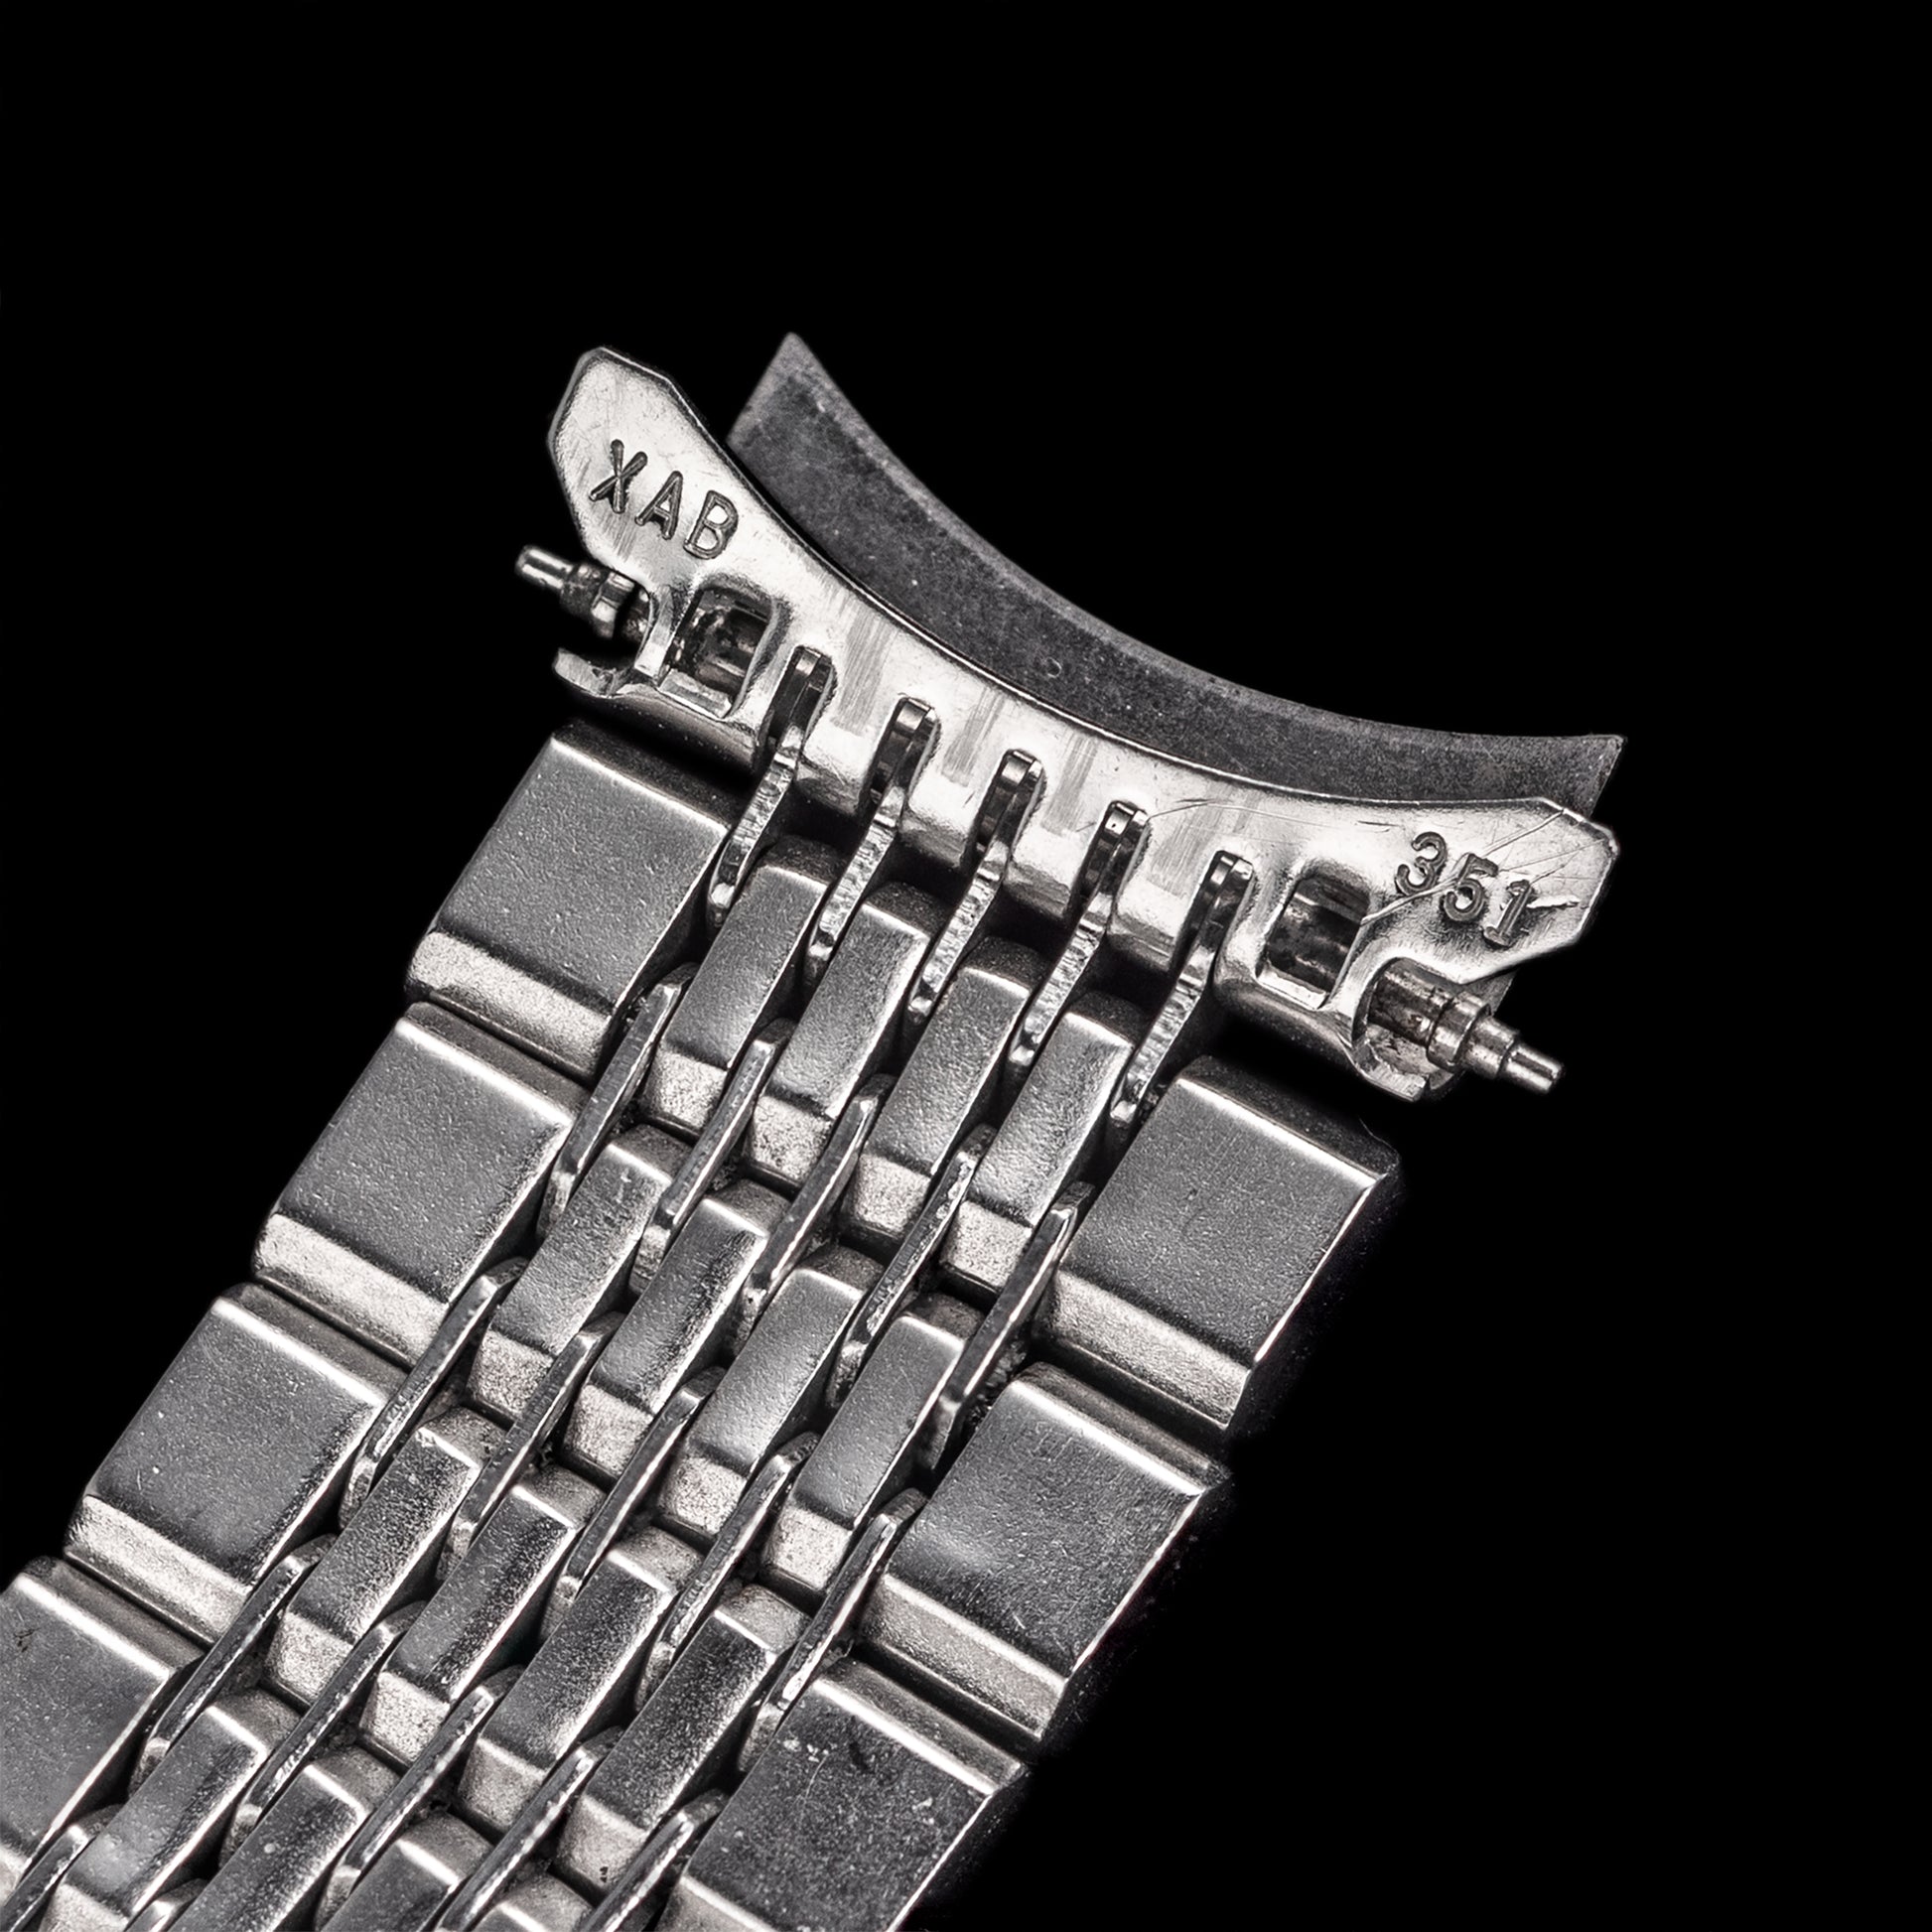 Vent et øjeblik aspekt Sæt ud No. b6775 / King Seiko 18mm Bracelet - 1960s – From Time To Times